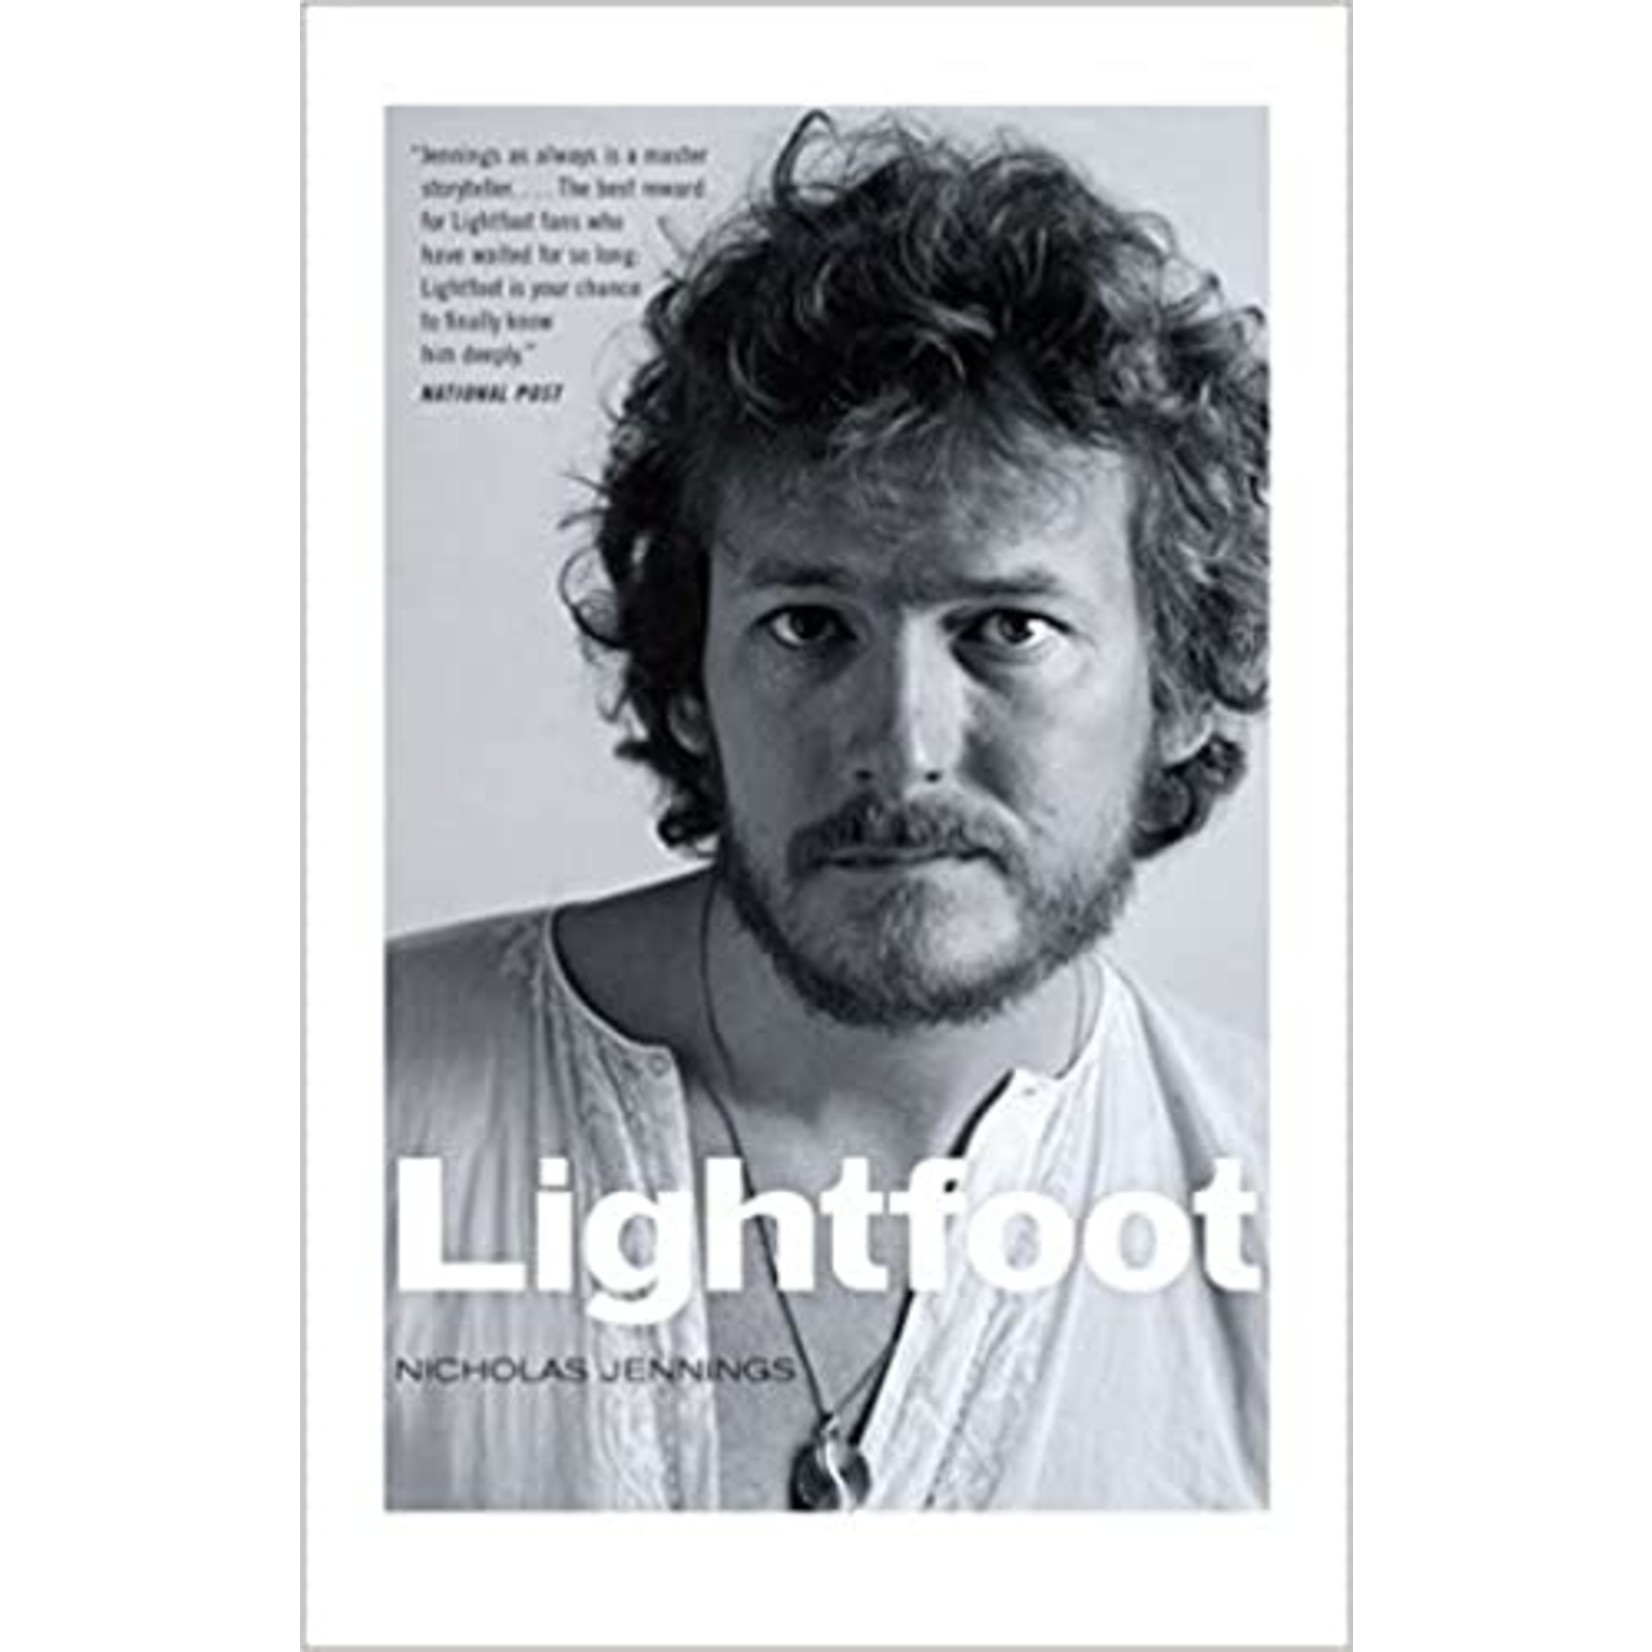 Gordon Lightfoot - Lightfoot [Book]